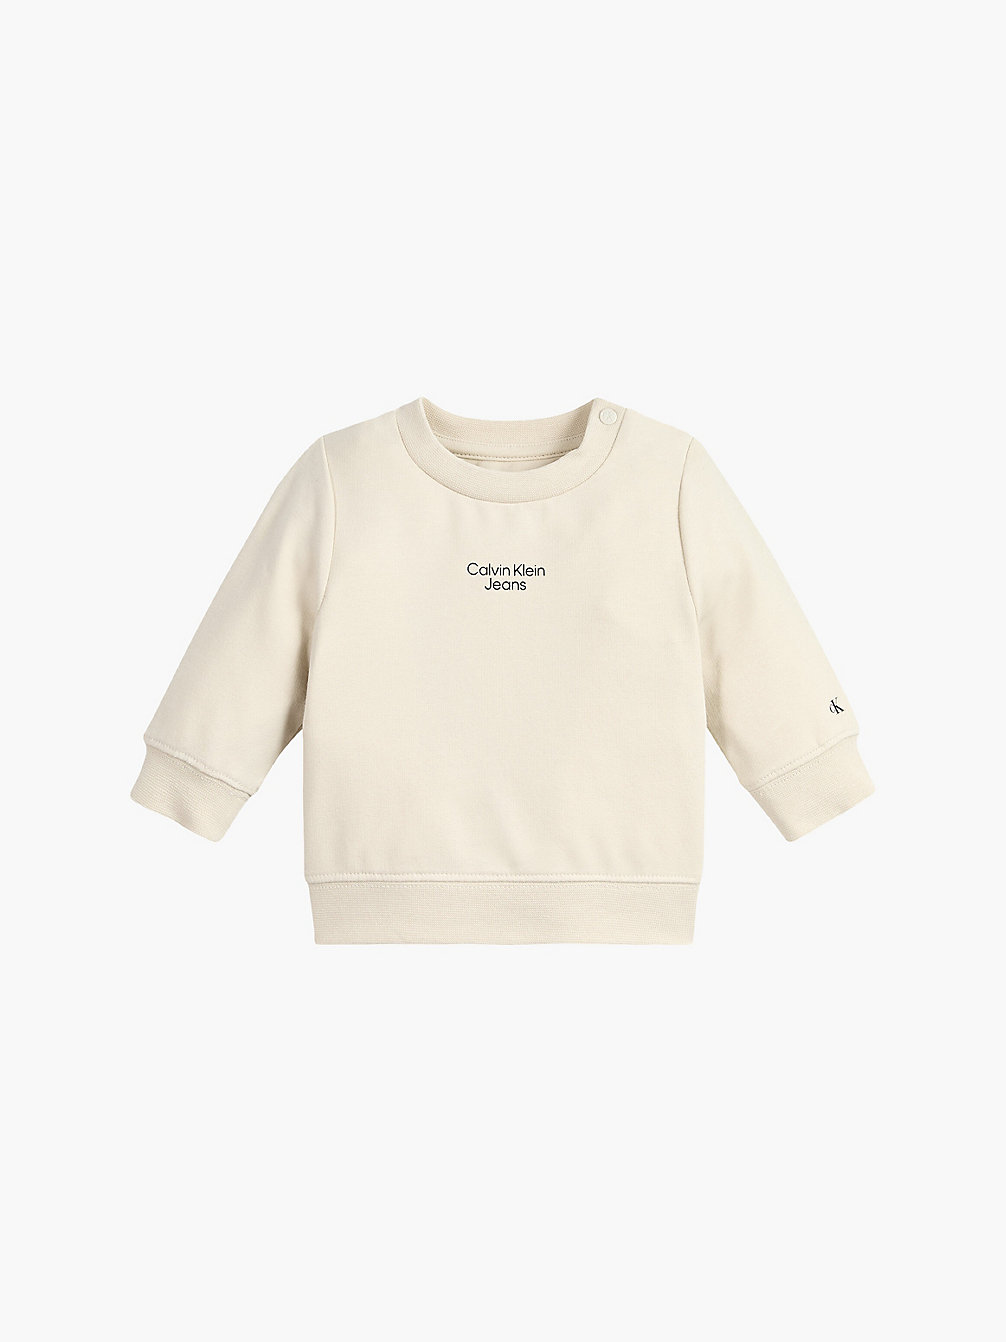 MUSLIN Newborn Organic Cotton Sweatshirt undefined newborn Calvin Klein